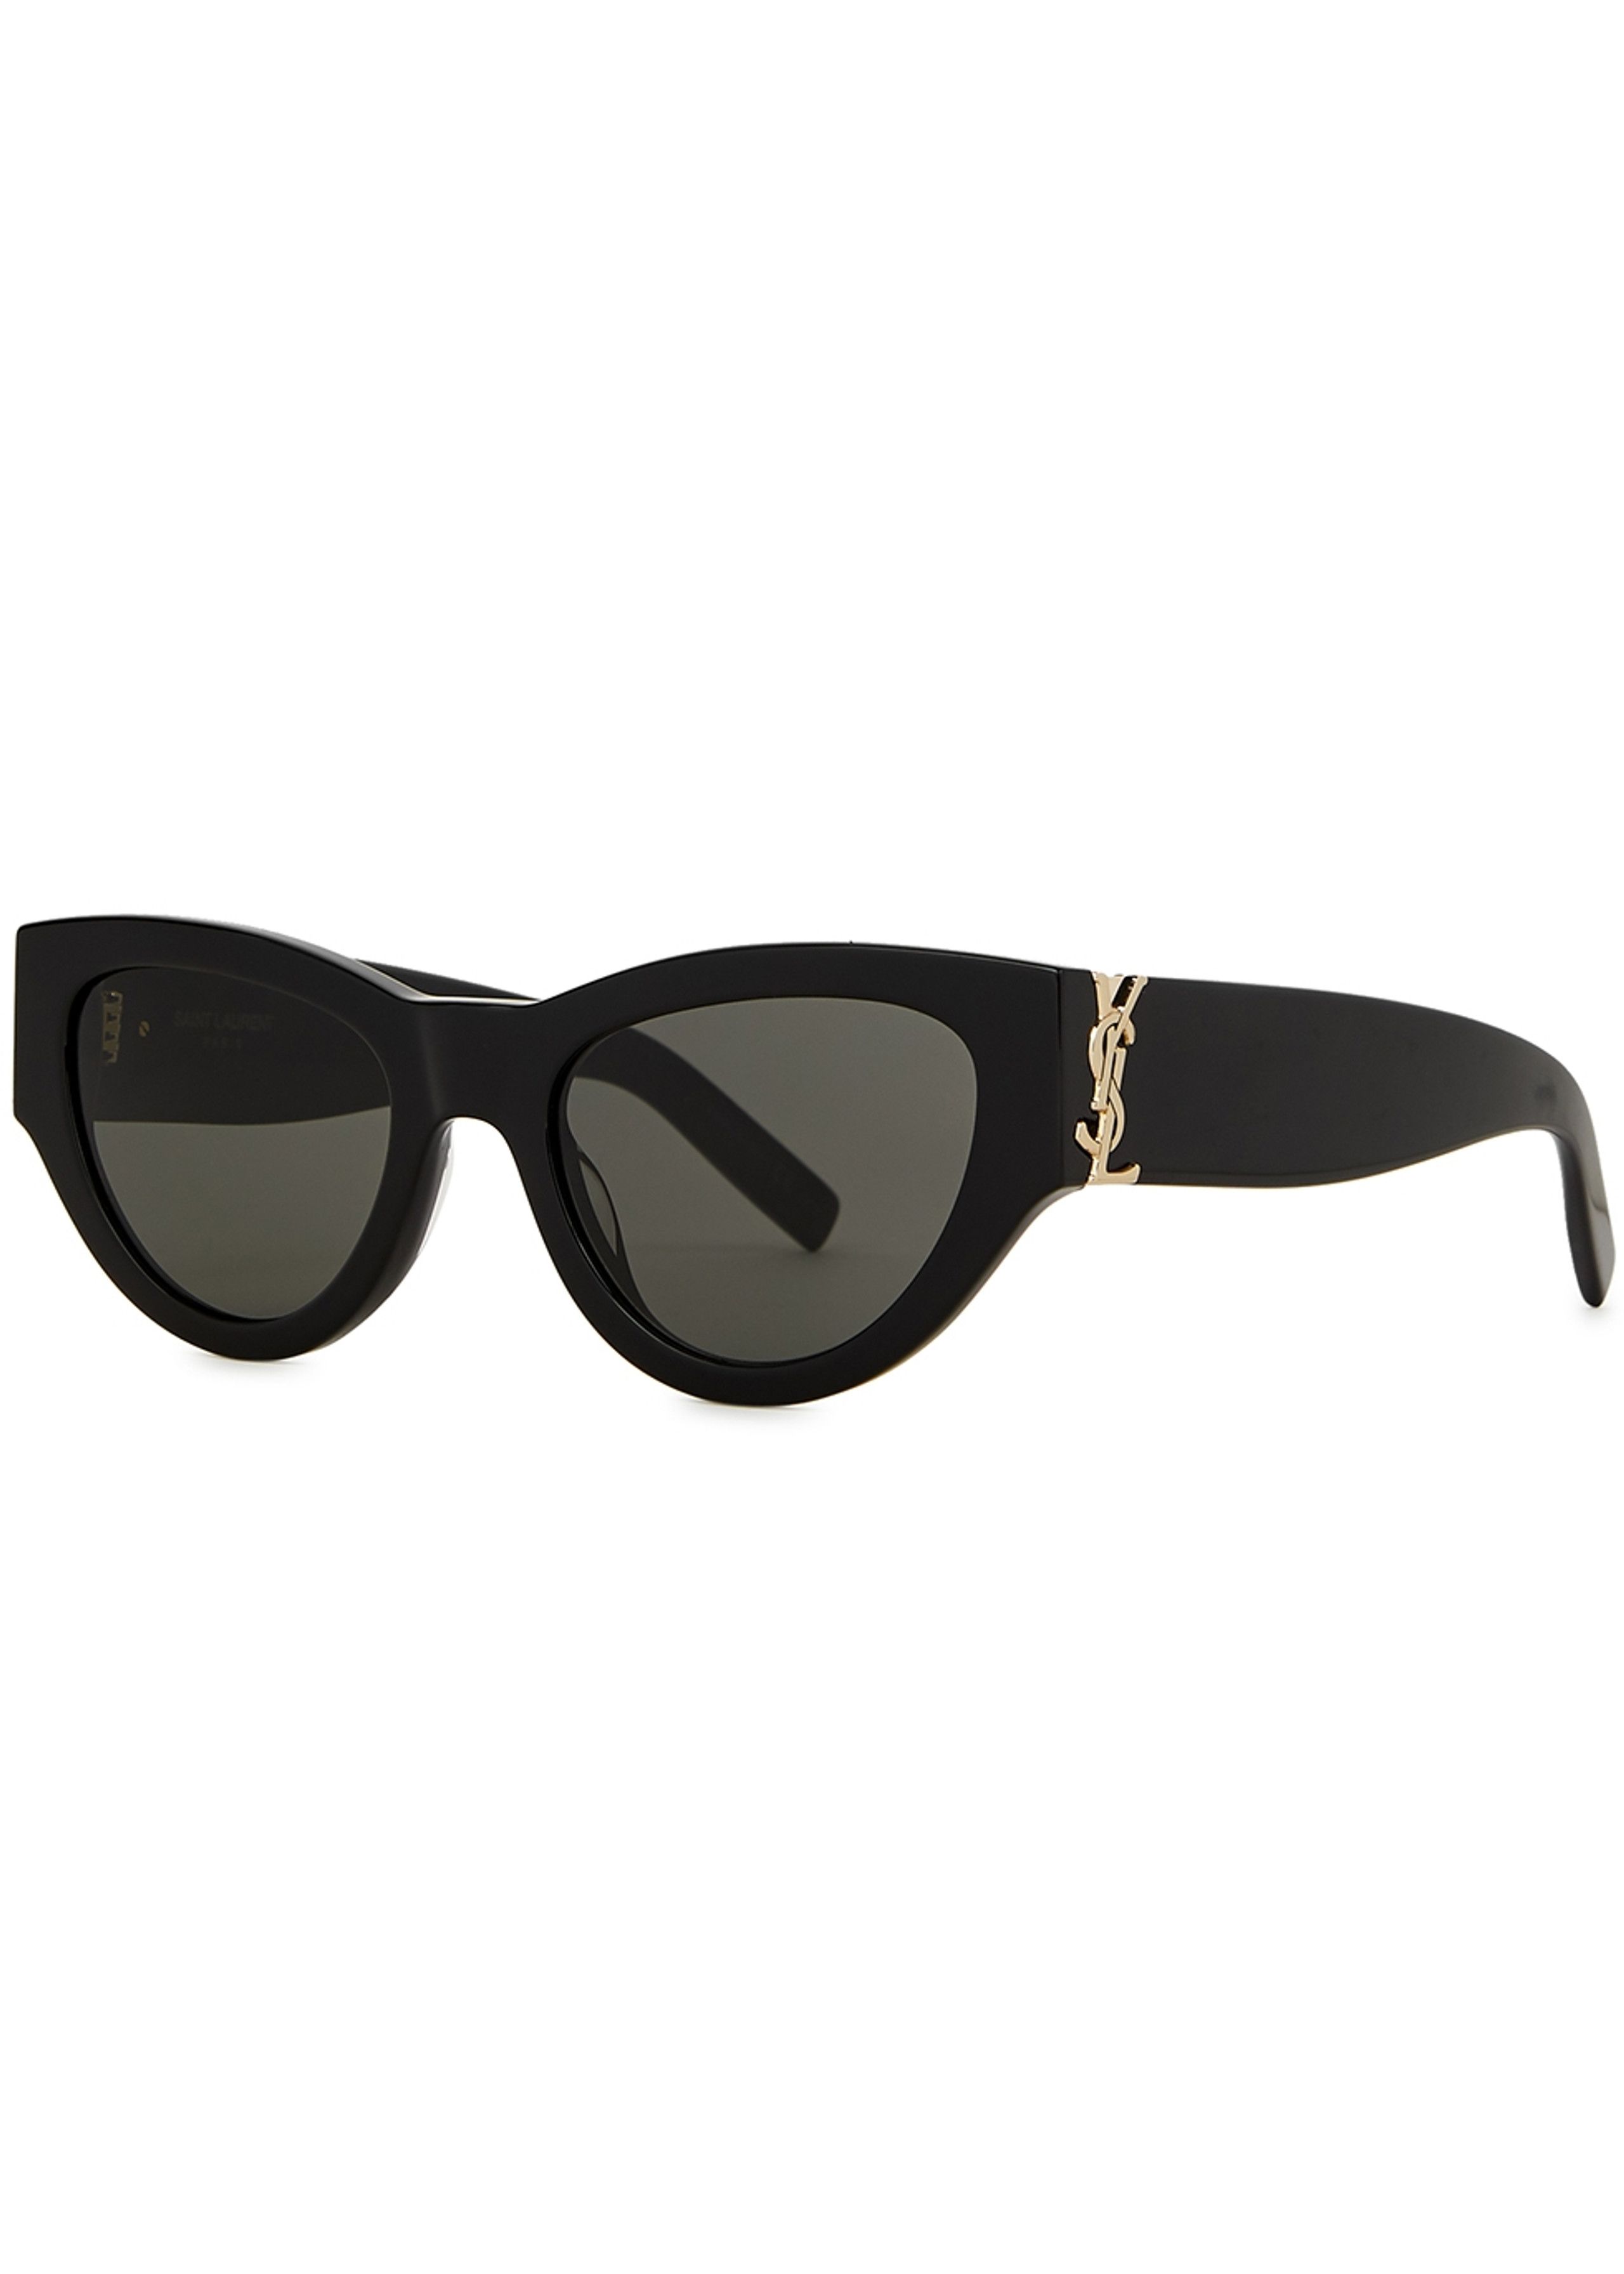 Cat-eye sunglasses | Harvey Nichols